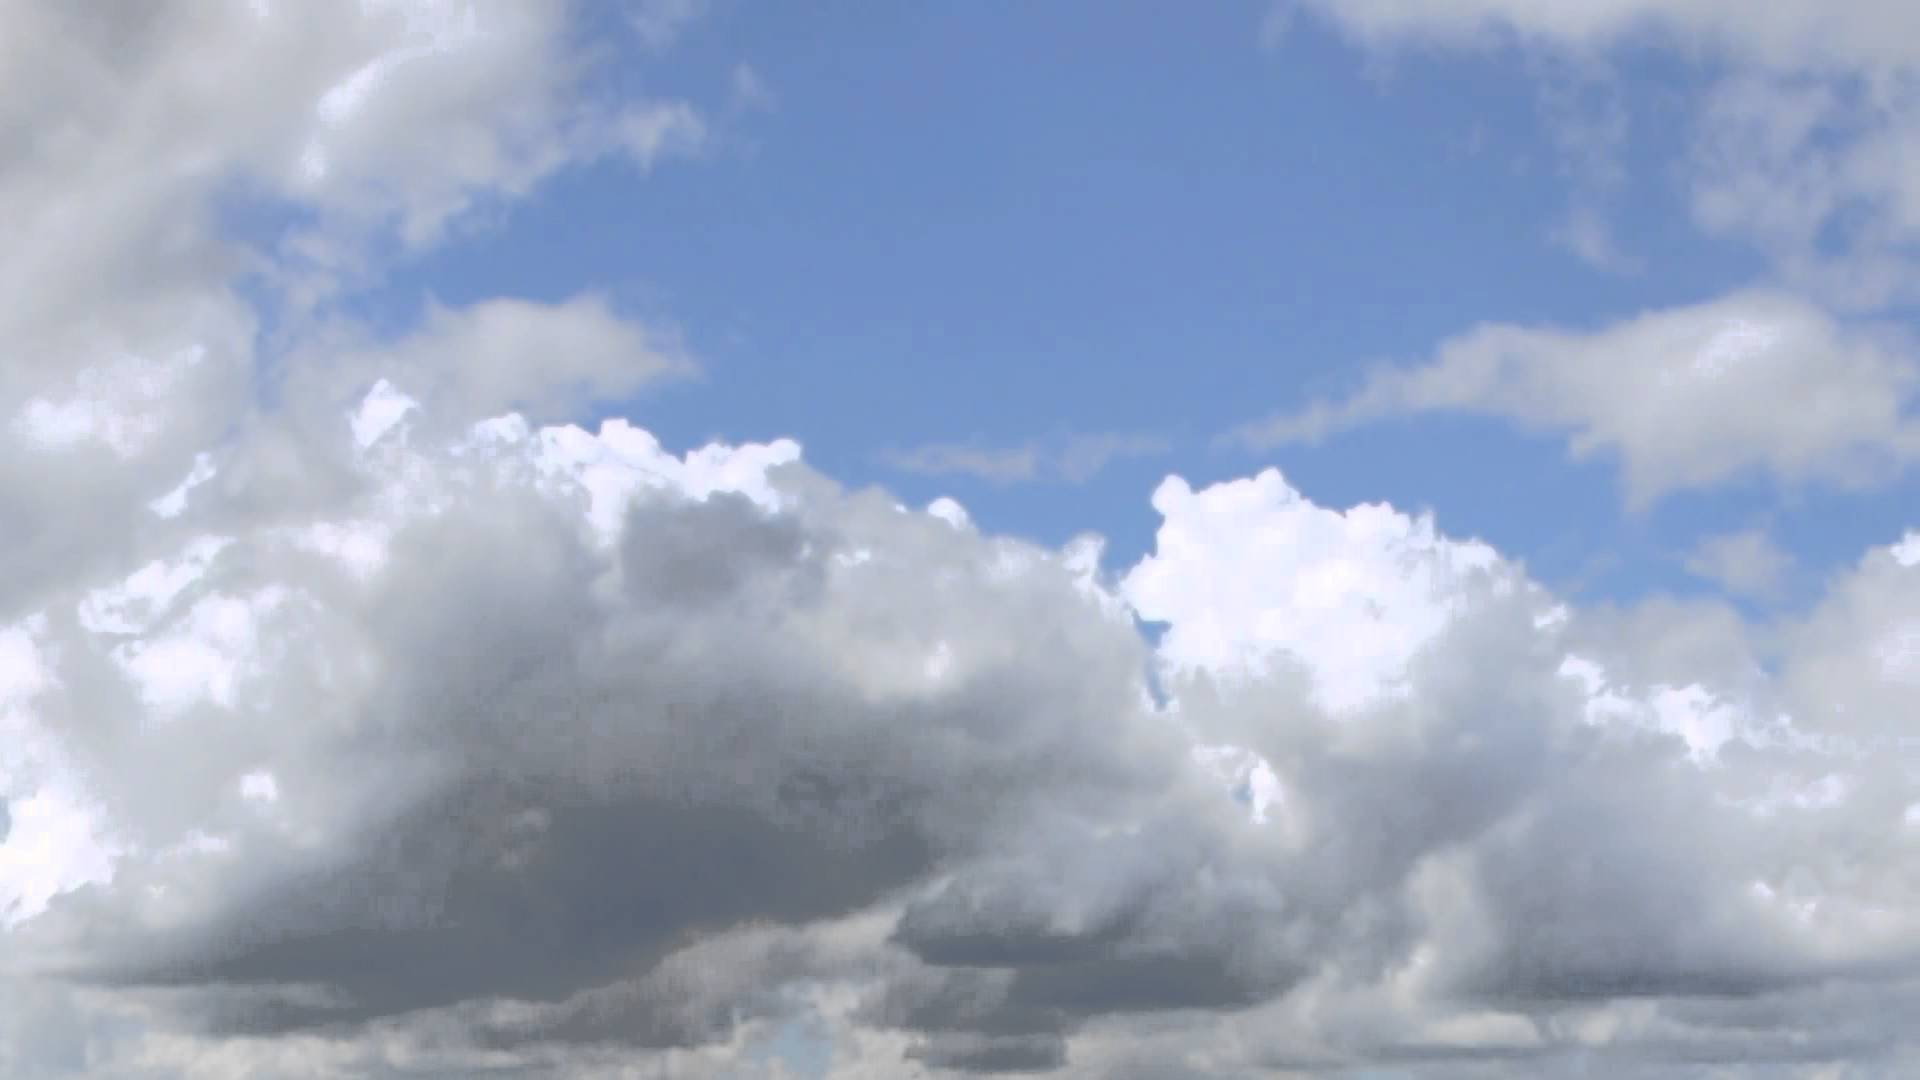 Mây trên nền xanh chắc chắn là một trong những hình ảnh đẹp nhất mà bạn từng thấy. Hãy tưởng tượng mình đang bay giữa những đám mây đó, cảm giác thật là tuyệt vời. Xem ngay để thấy sự tuyệt vời của bức ảnh này!